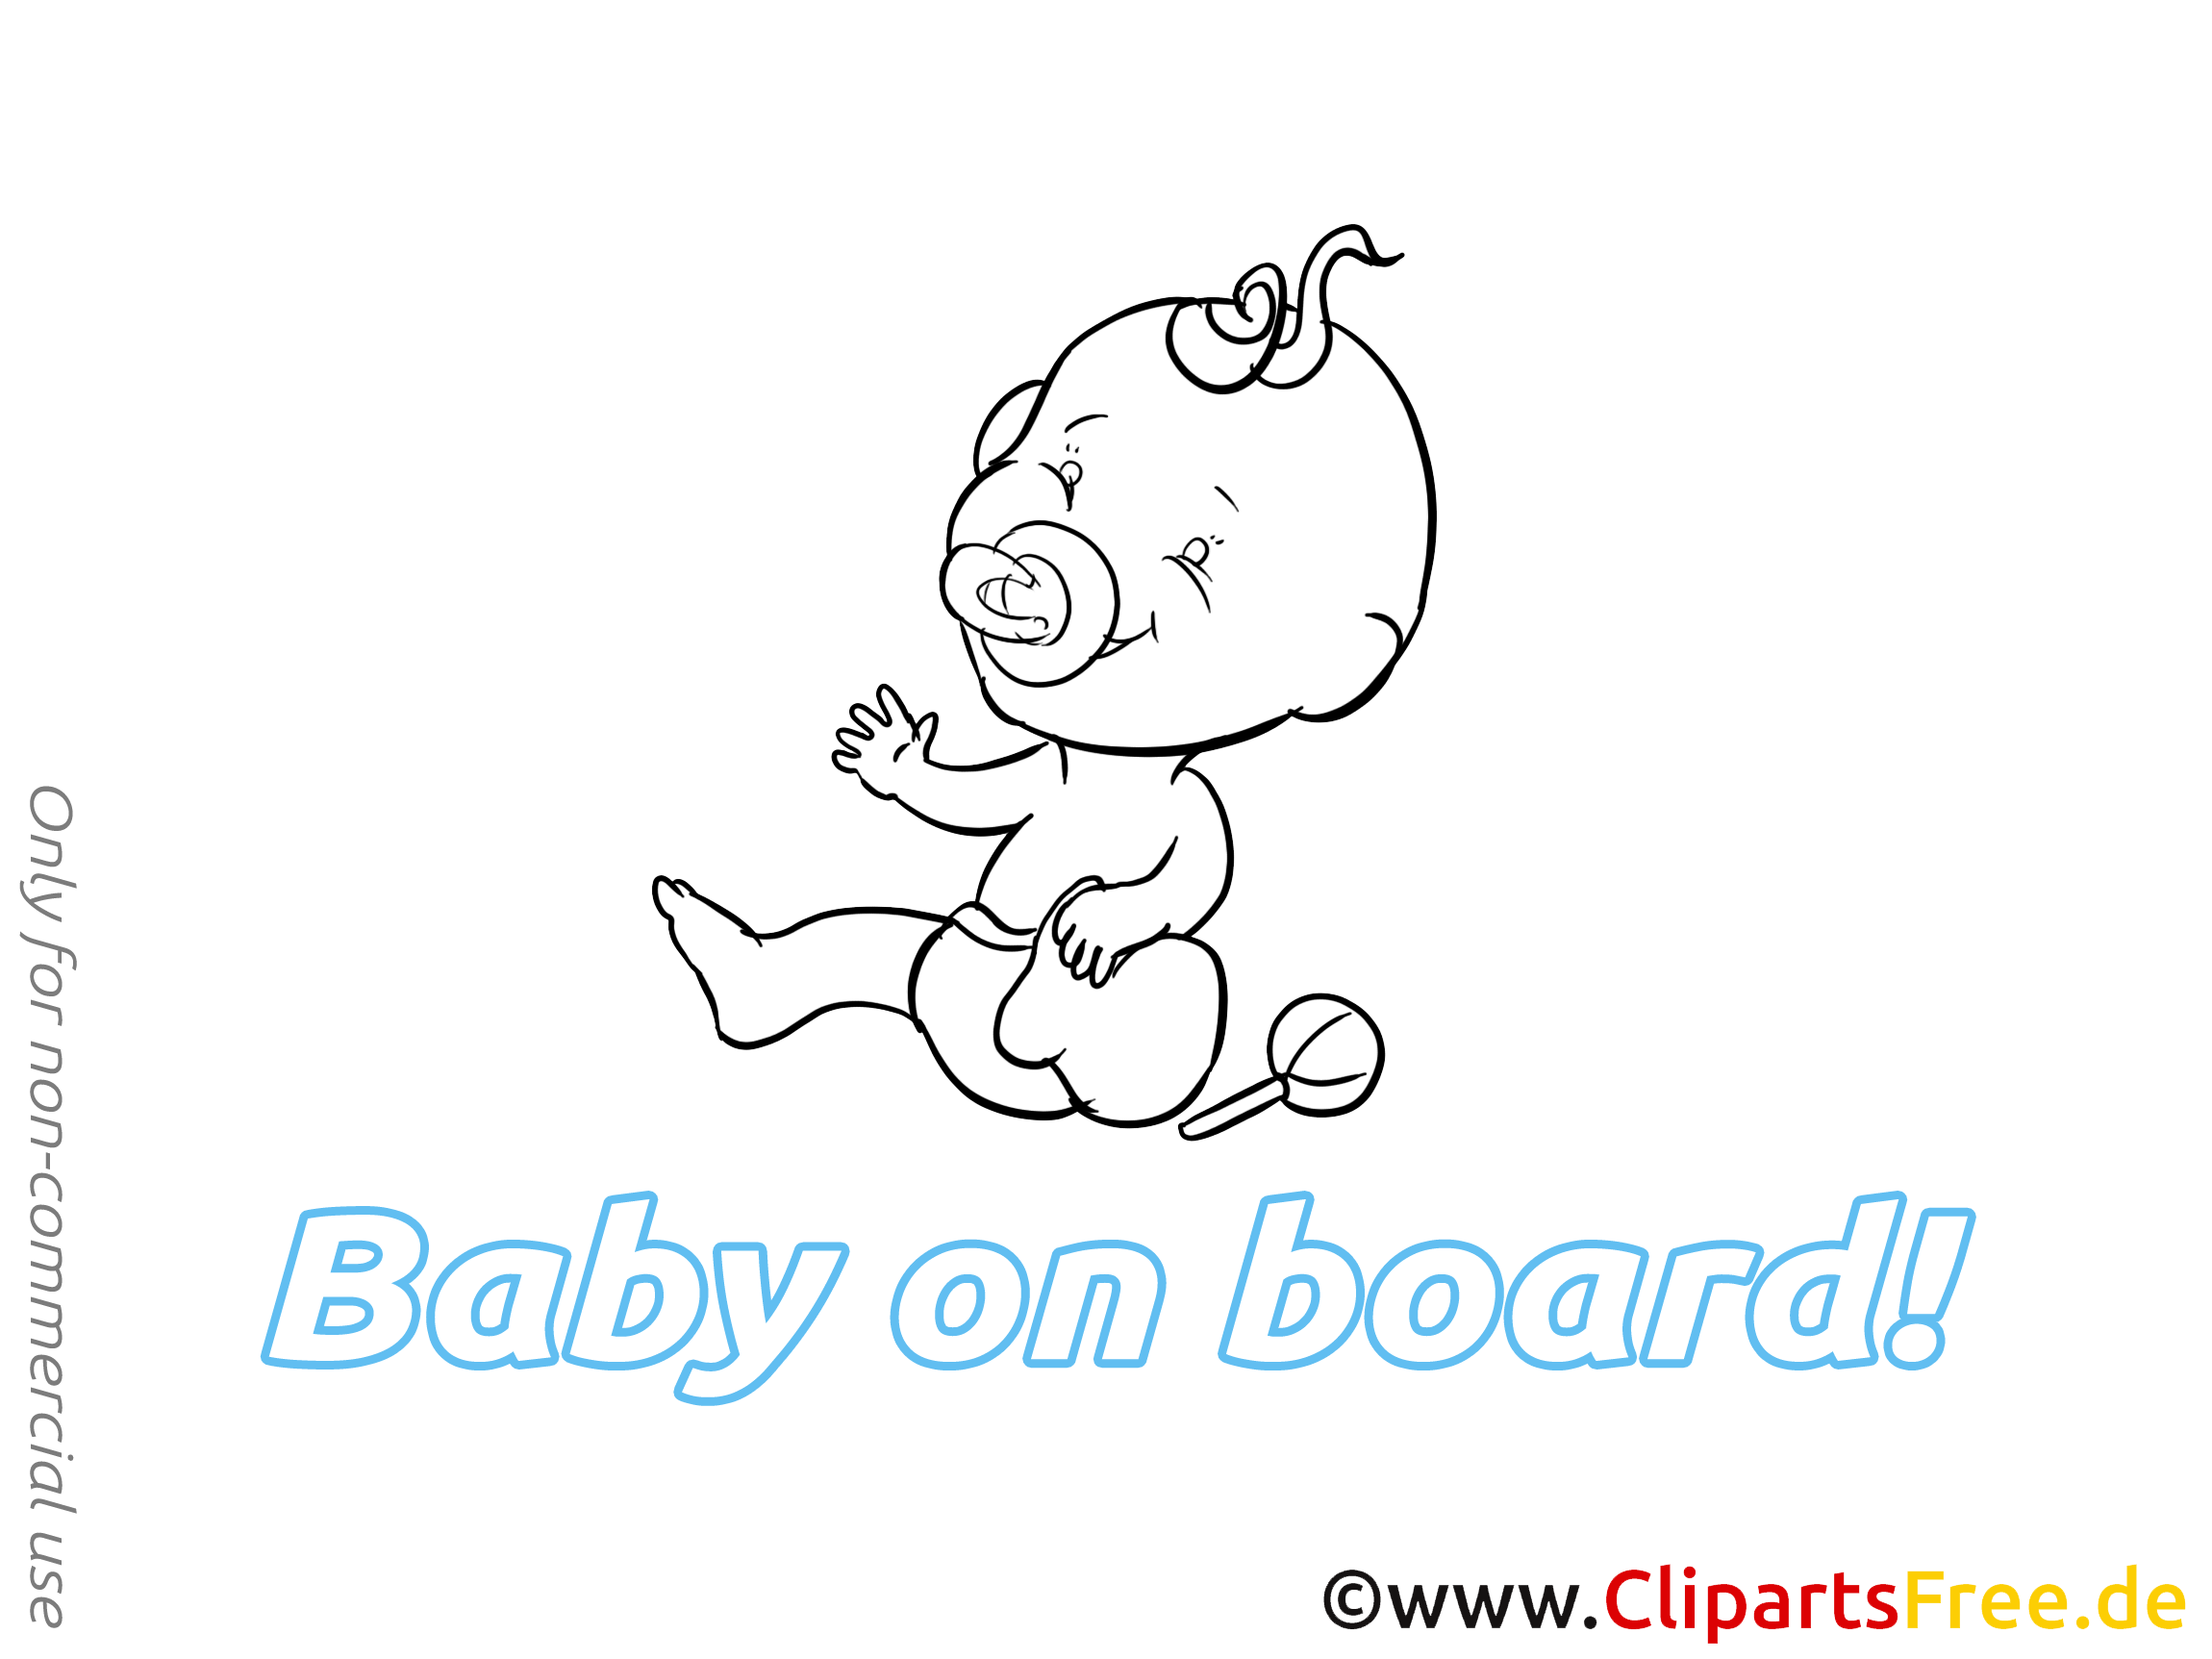 Image gratuite bébé à bord illustration